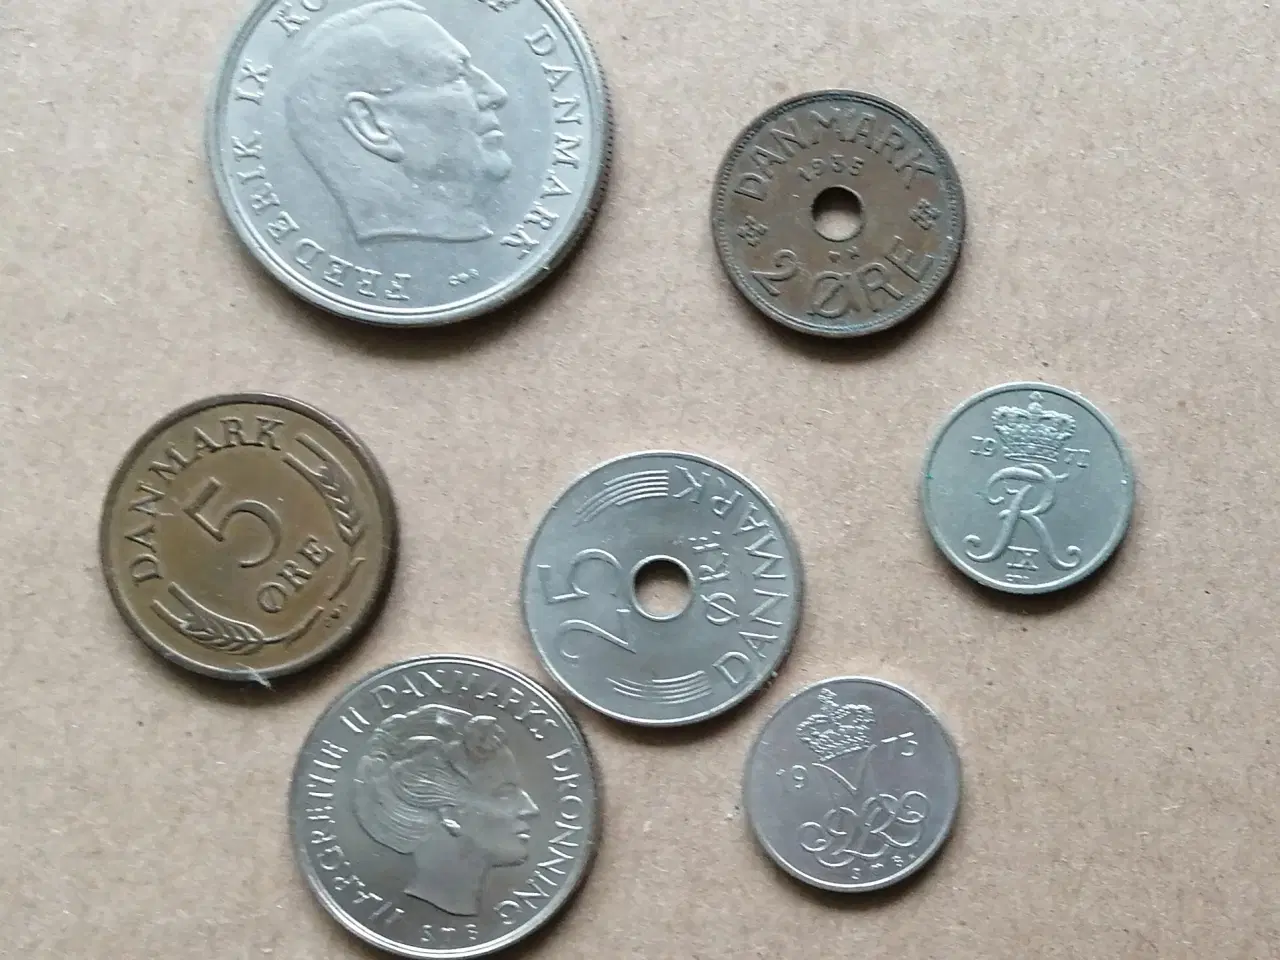 Billede 1 - Danske mønter og 10 kr. seddel